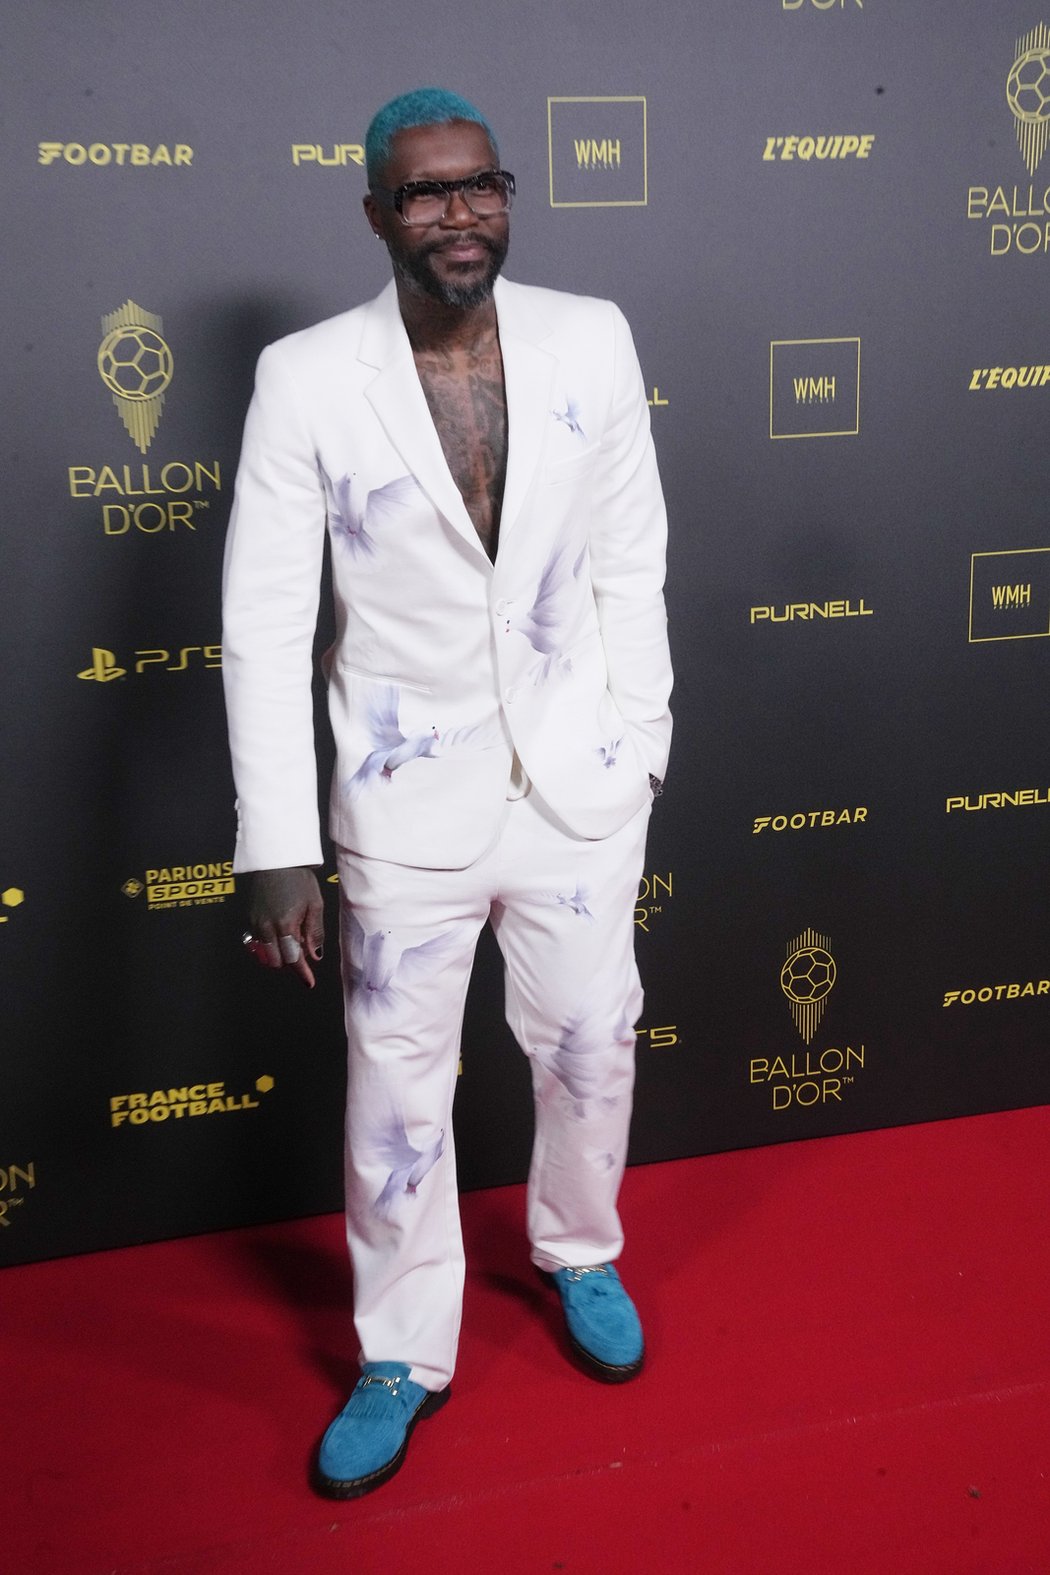 Bývalý francouzský útočník Djibril Cissé zvolil velmi kontroverzní outfit